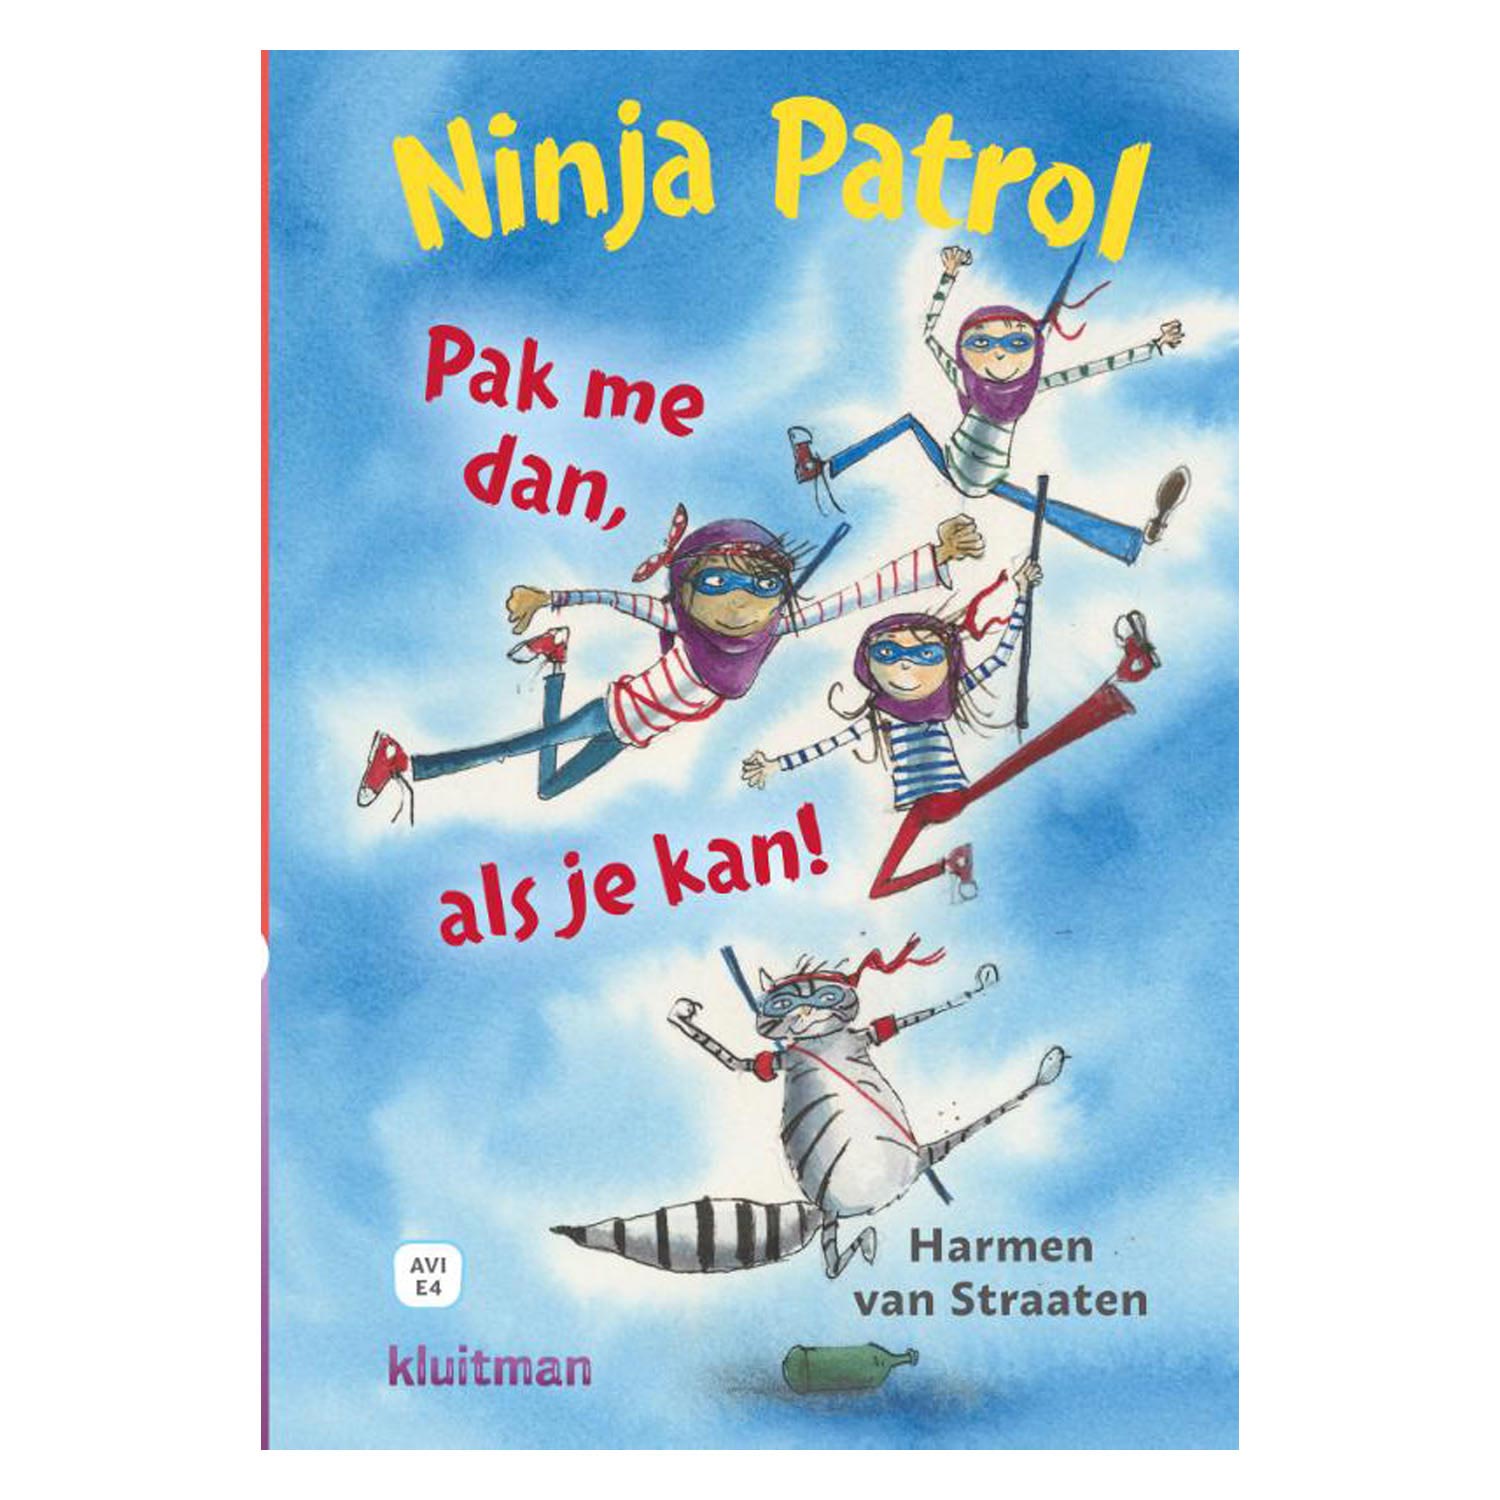 Ninja Patrol - Pak me dan als je kan! AVI-E4